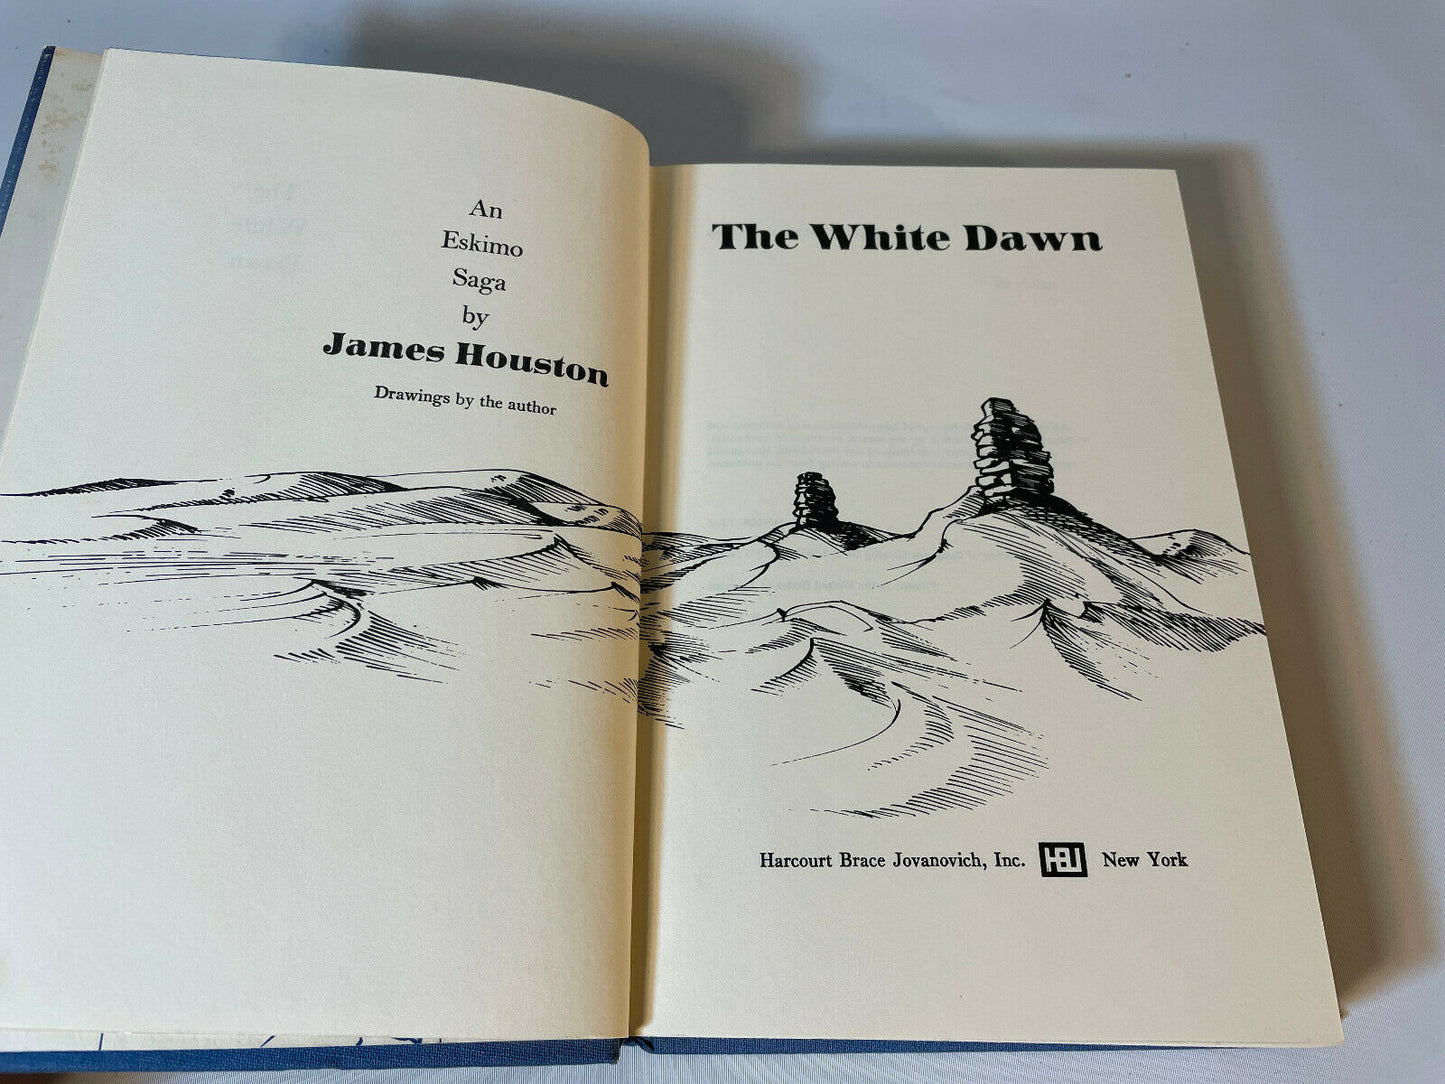 James Houston 1971 The White Dawn An Eskimo Saga Hardcover (C4)